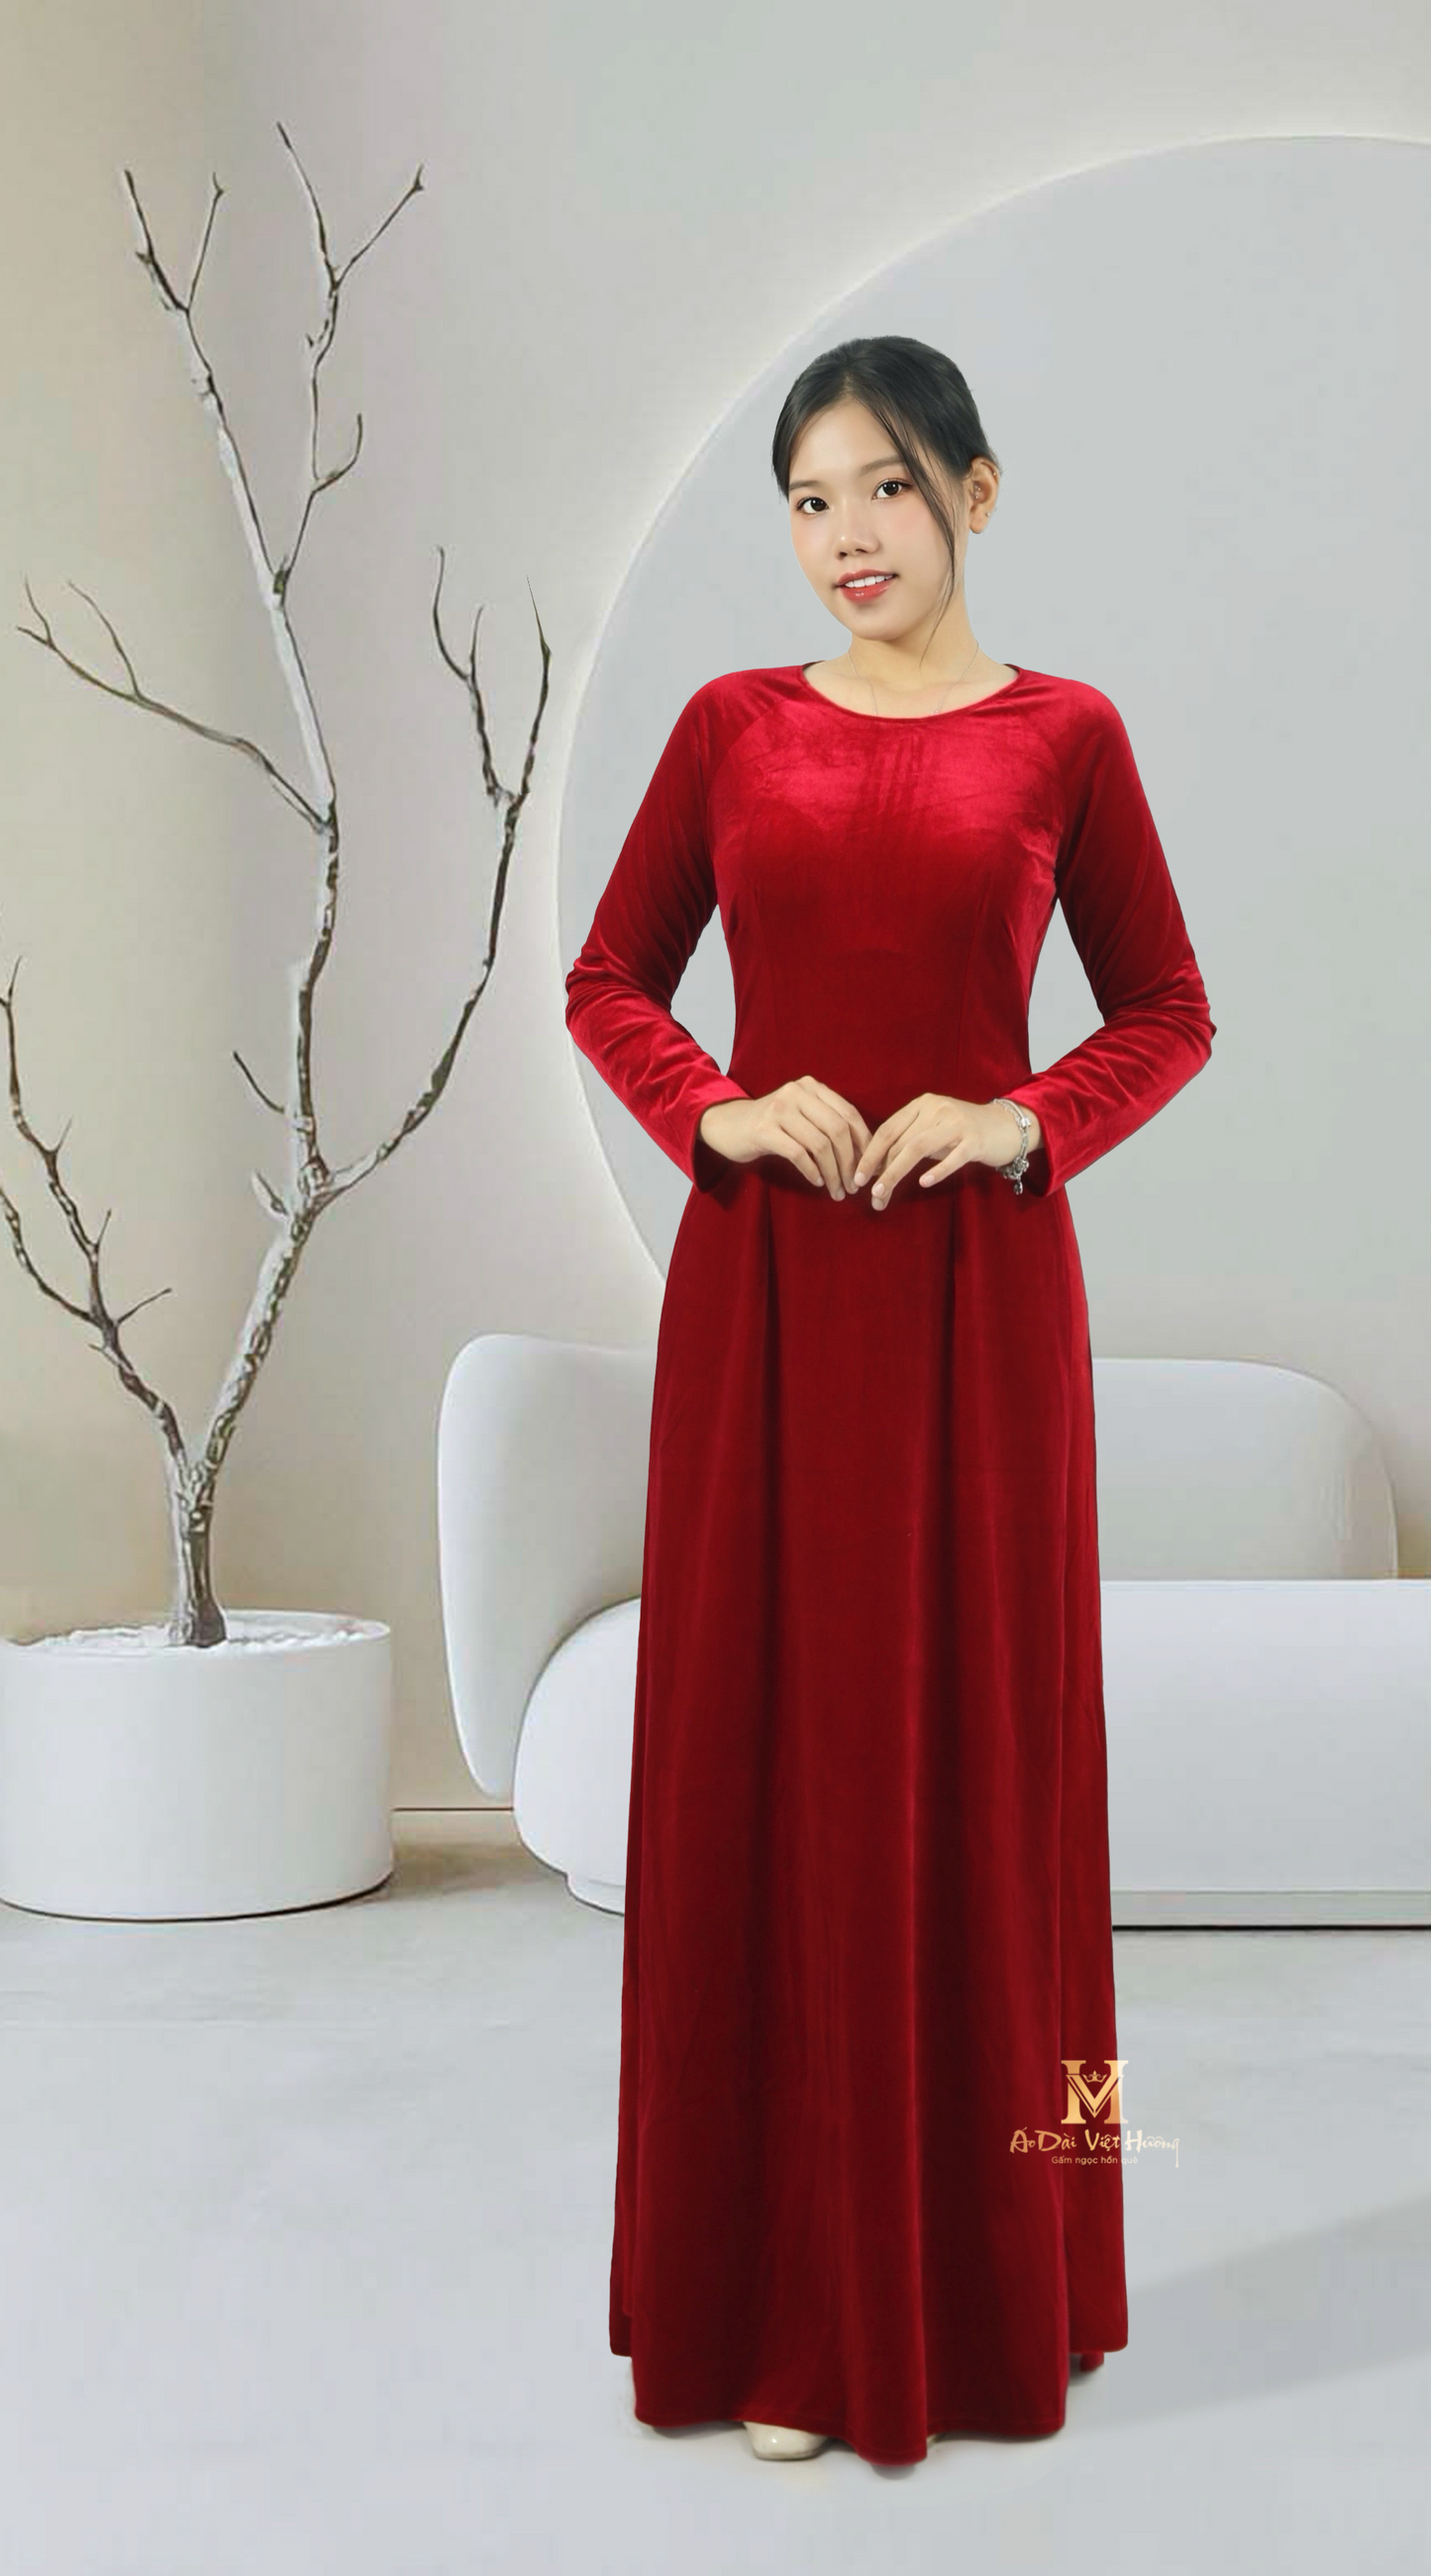 260 - Carmine Red Velvet Fabric Áo Dài (Áo Dài Nhung Tuyết Đỏ Đô)